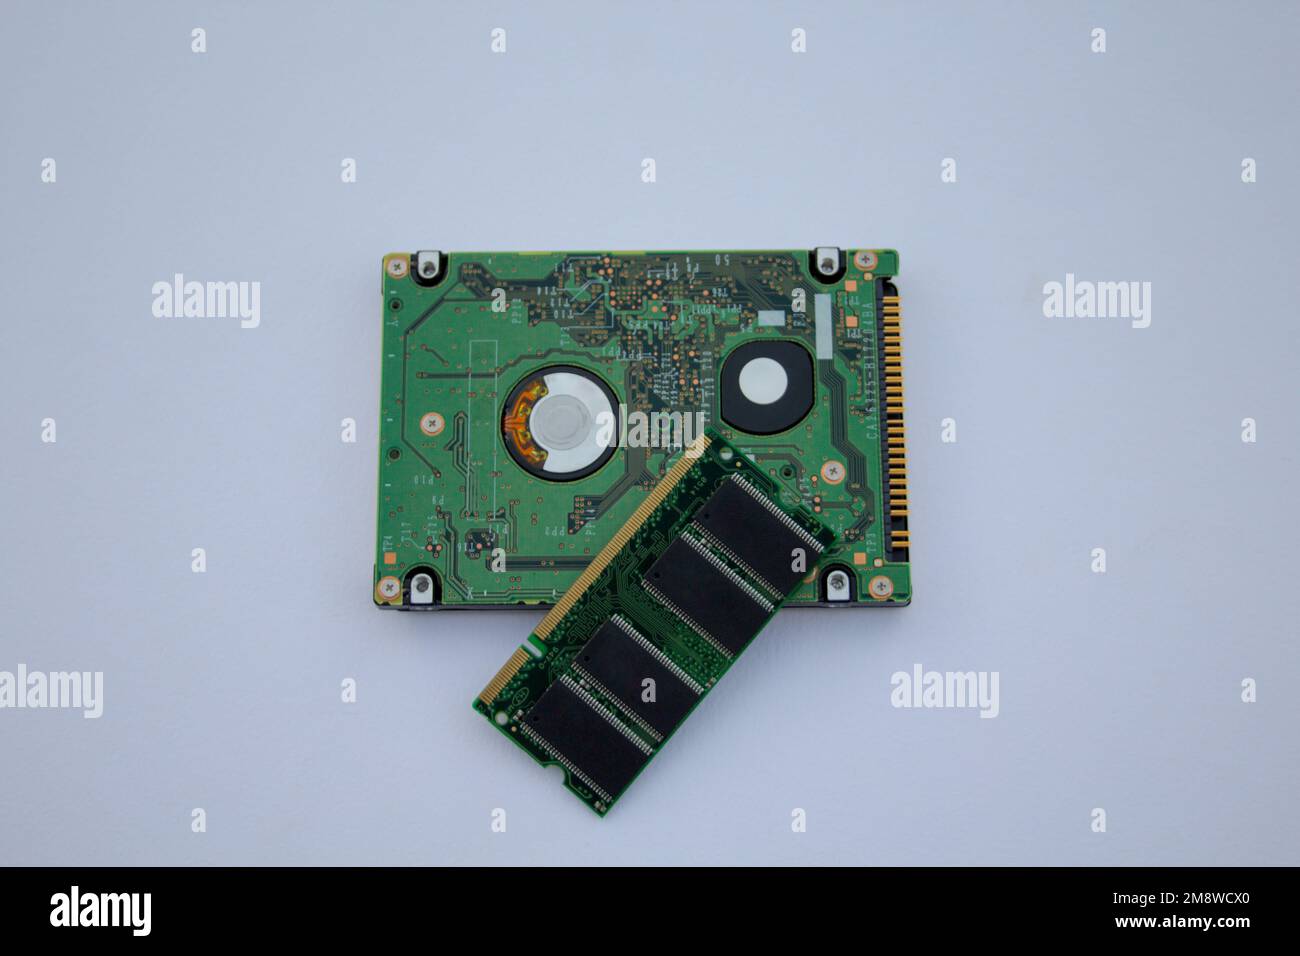 Immagine di una memoria RAM e di un disco rigido di un computer. Componenti tecnologici di un pc. Foto Stock